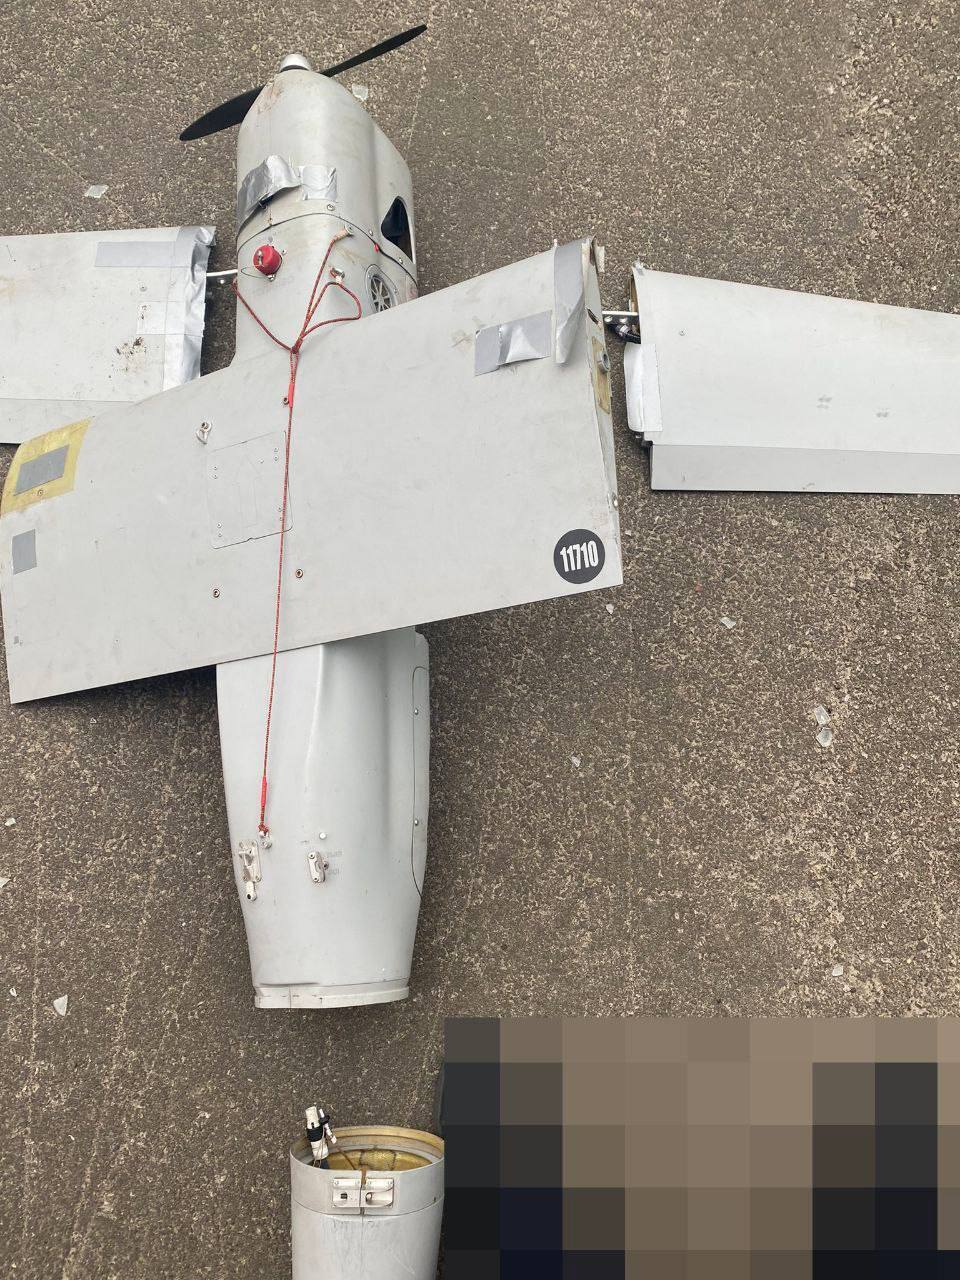 ВСУ сбили российский беспилотник "Орлан-10" за 100 тыс. долларов. Фото